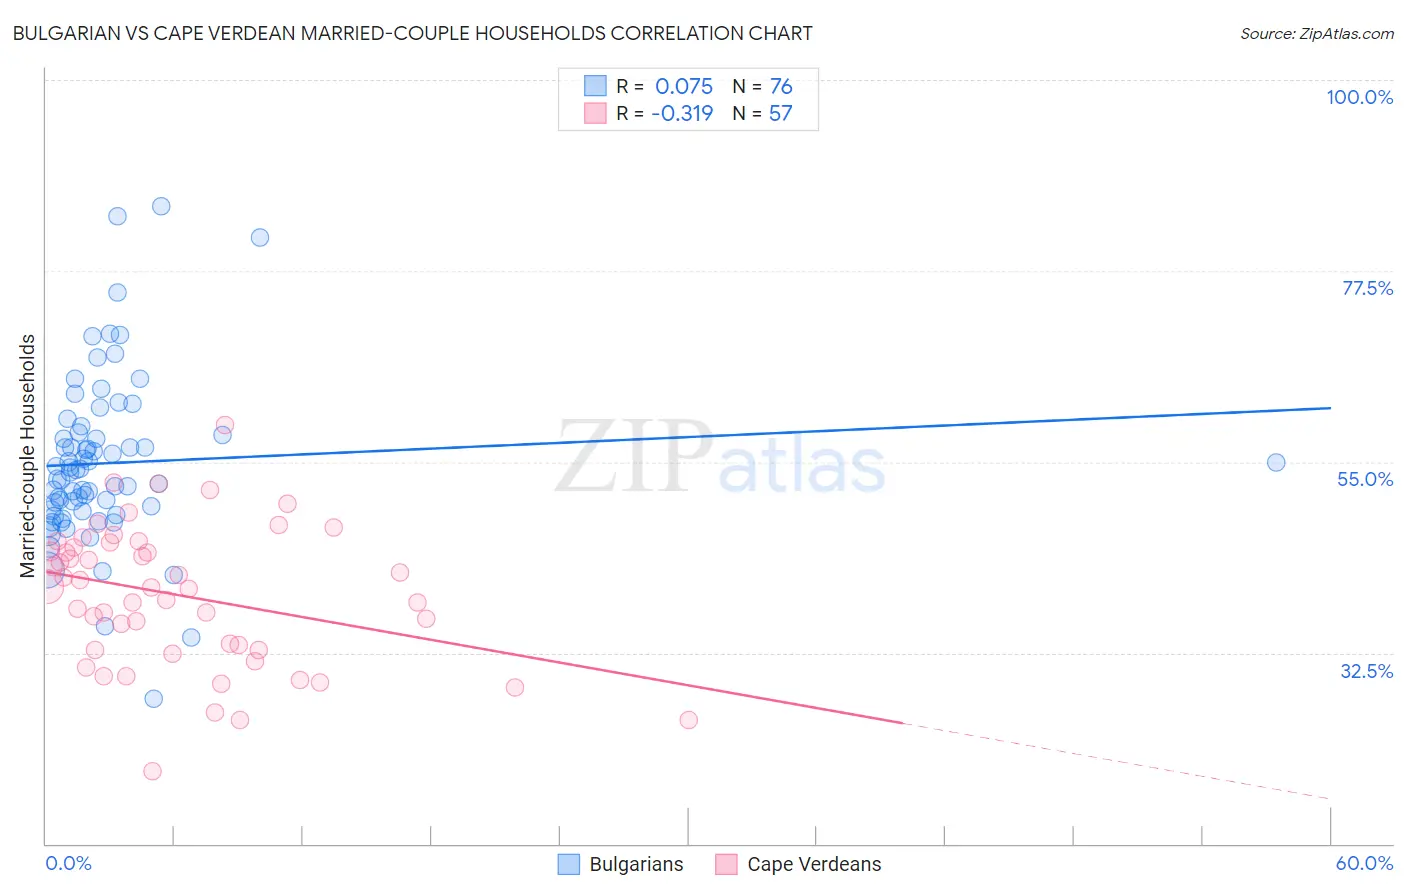 Bulgarian vs Cape Verdean Married-couple Households